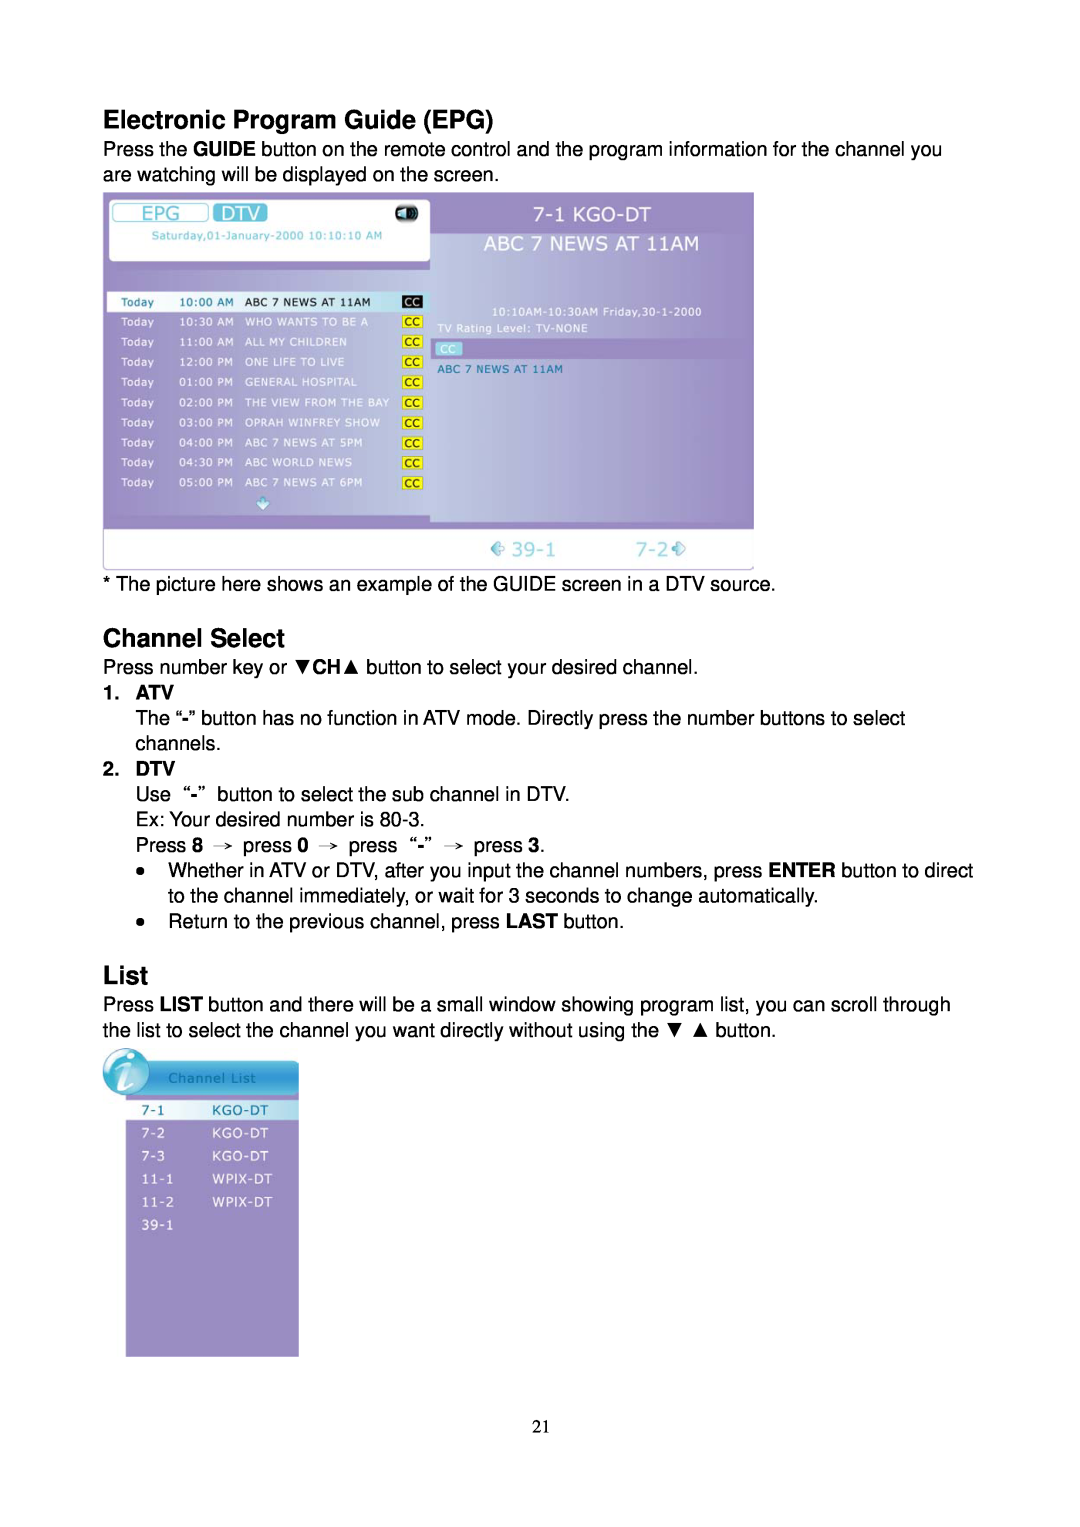 AOC L24H898 manual Electronic Program Guide EPG, Channel Select, List, Atv, Dtv 